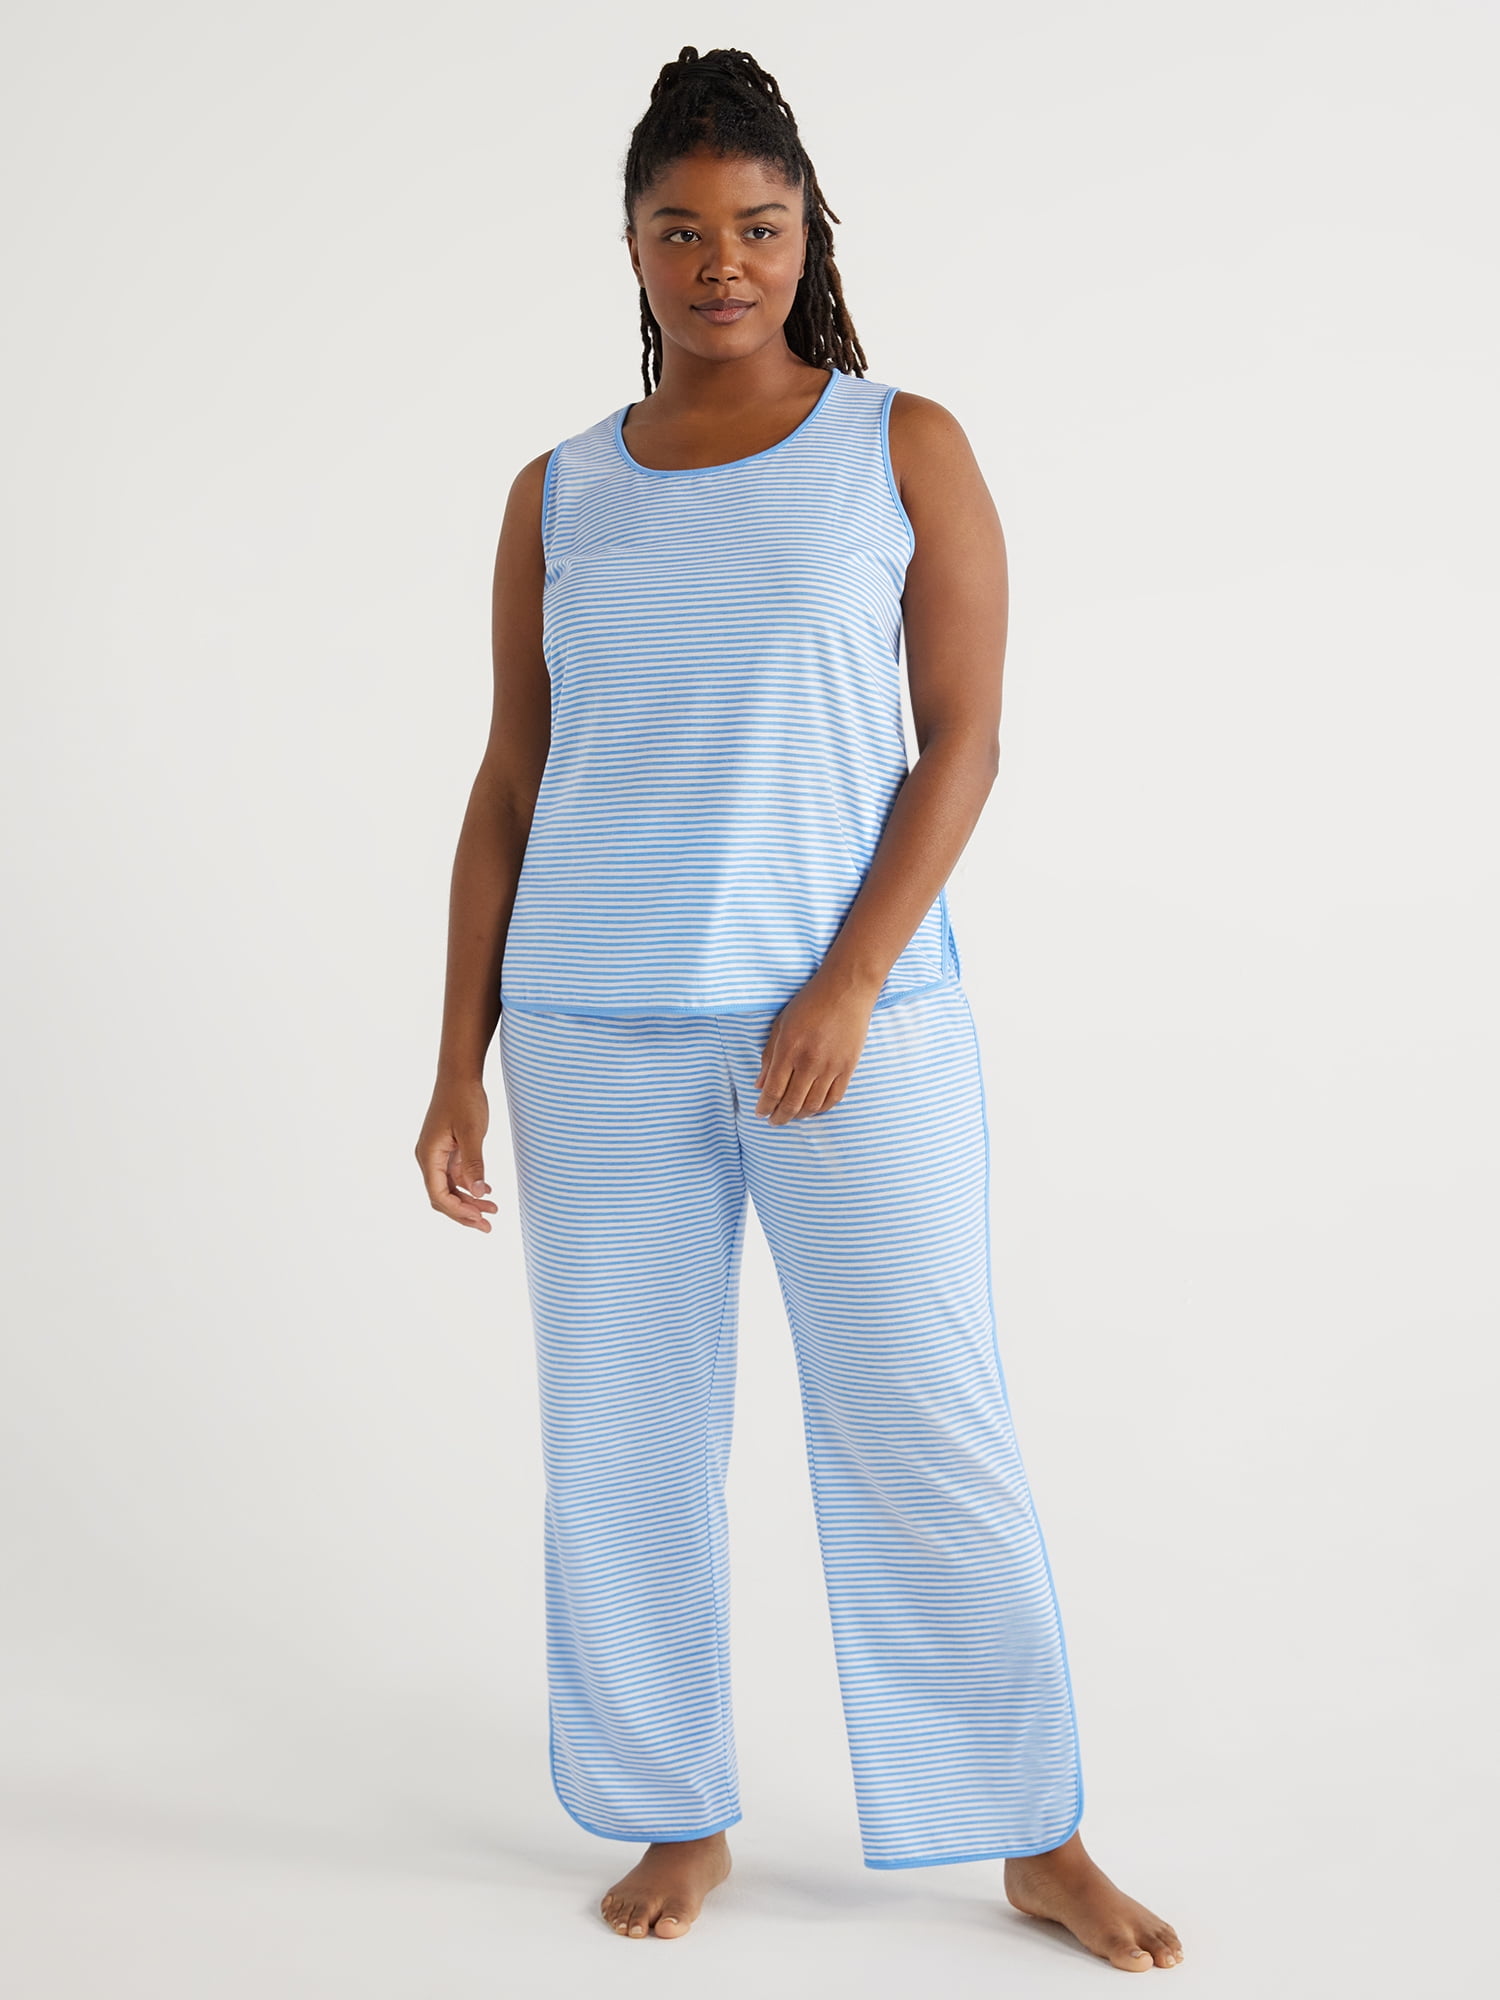 Joyspun Women's Cotton Blend Tank Top and Pants Pajama Set, 2